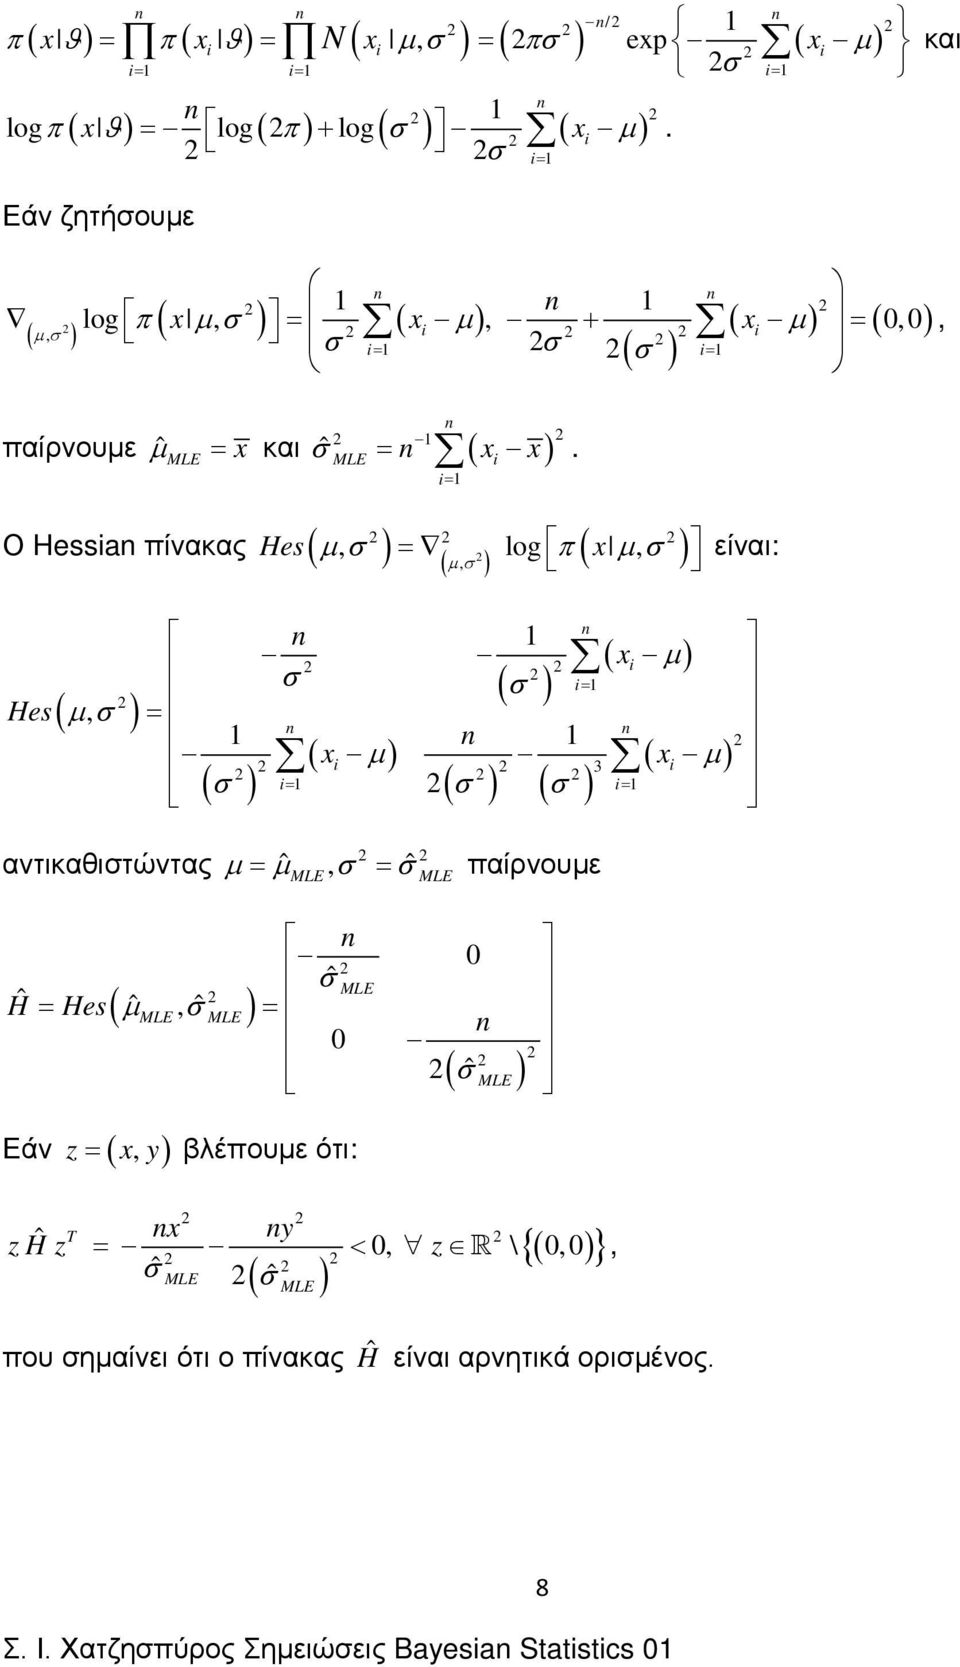 Ο Hessa πίνακας Hes ( µσ, ( log π ( µσ, Hes ( µσ, µσ, είναι: ( µ σ ( σ ( µ 3 ( µ ( σ ( σ ( σ αντικαθιστώντας µ ˆ µ, σ ˆ σ